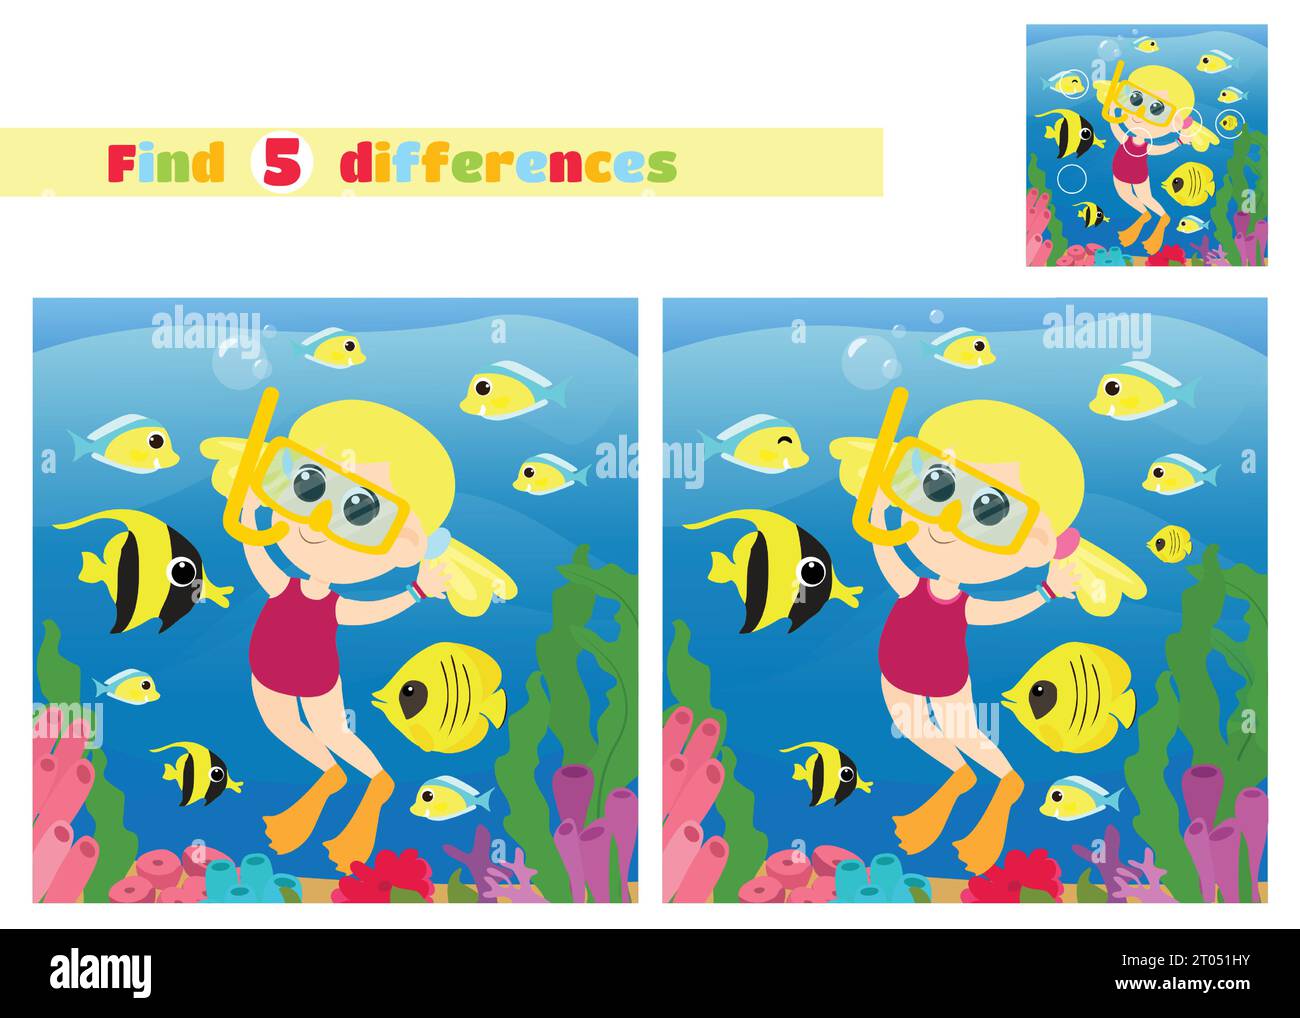 Finden Sie die Unterschiede. Mädchen aquadiver in der Unterwasserwelt in der Nähe von Korallen und Algen mit Fischen im Cartoon-Stil. Ein pädagogisches Spiel für Kinder. Stock Vektor